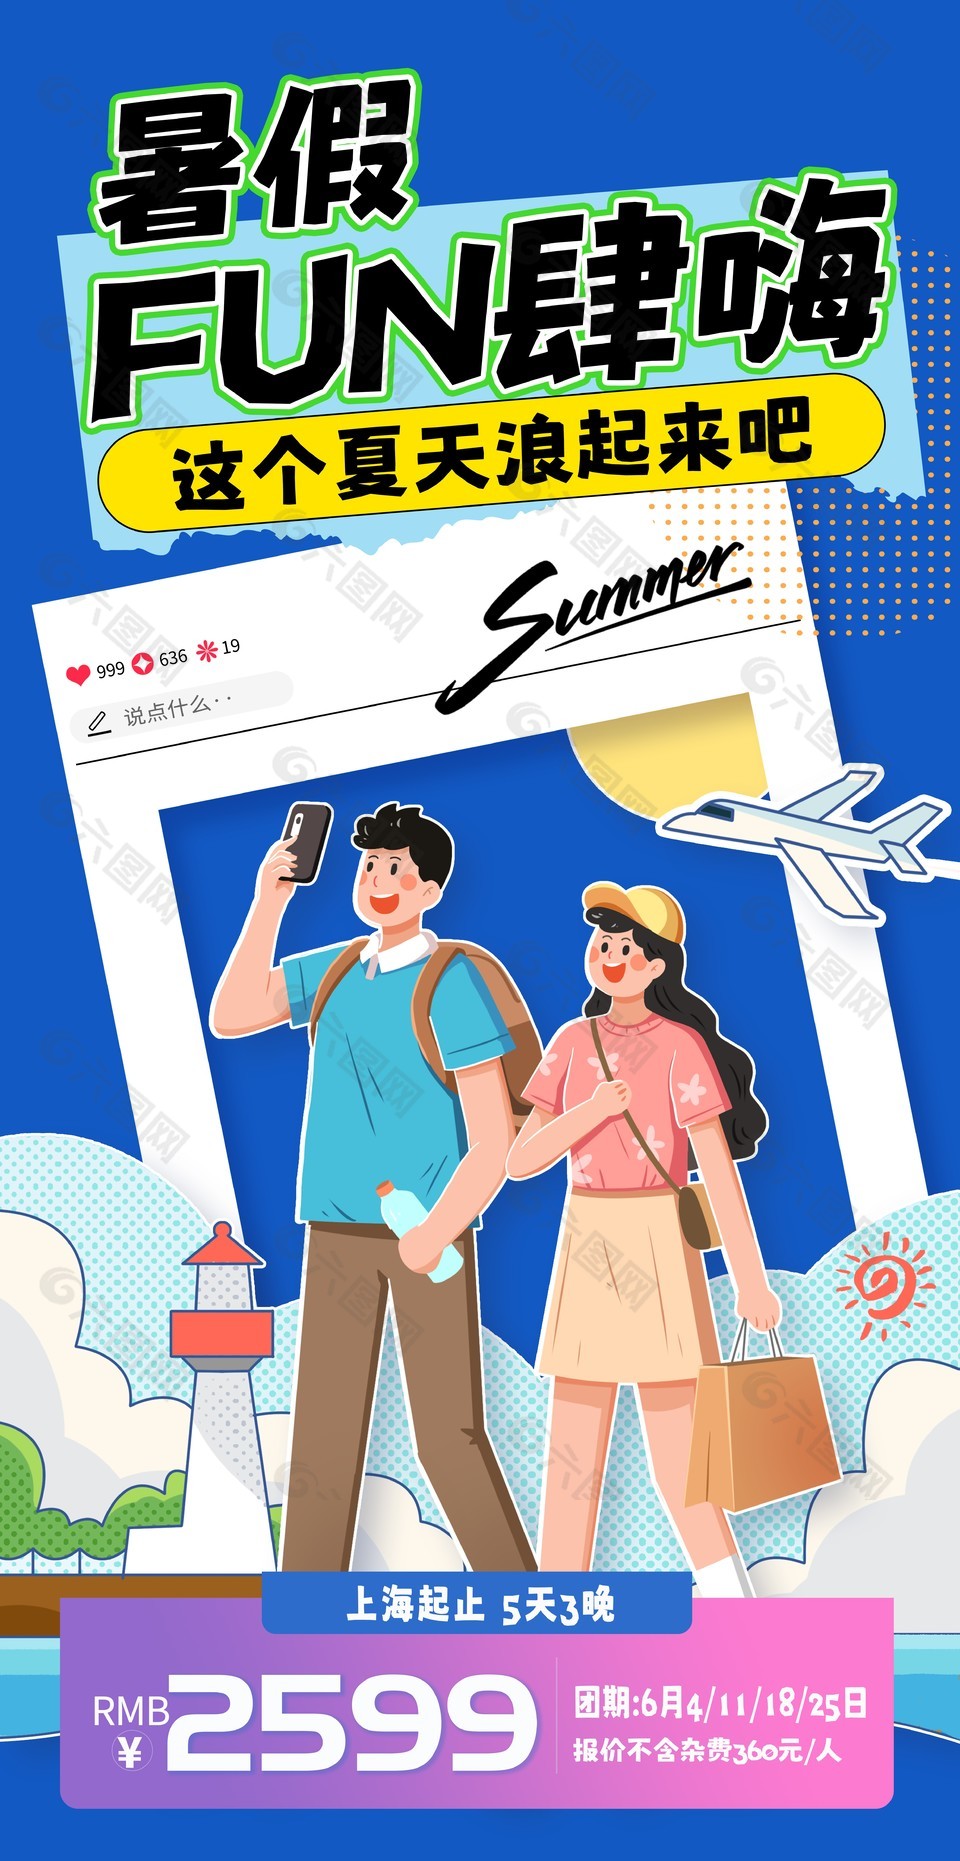 创意卡通贴纸元素暑假旅游宣传海报